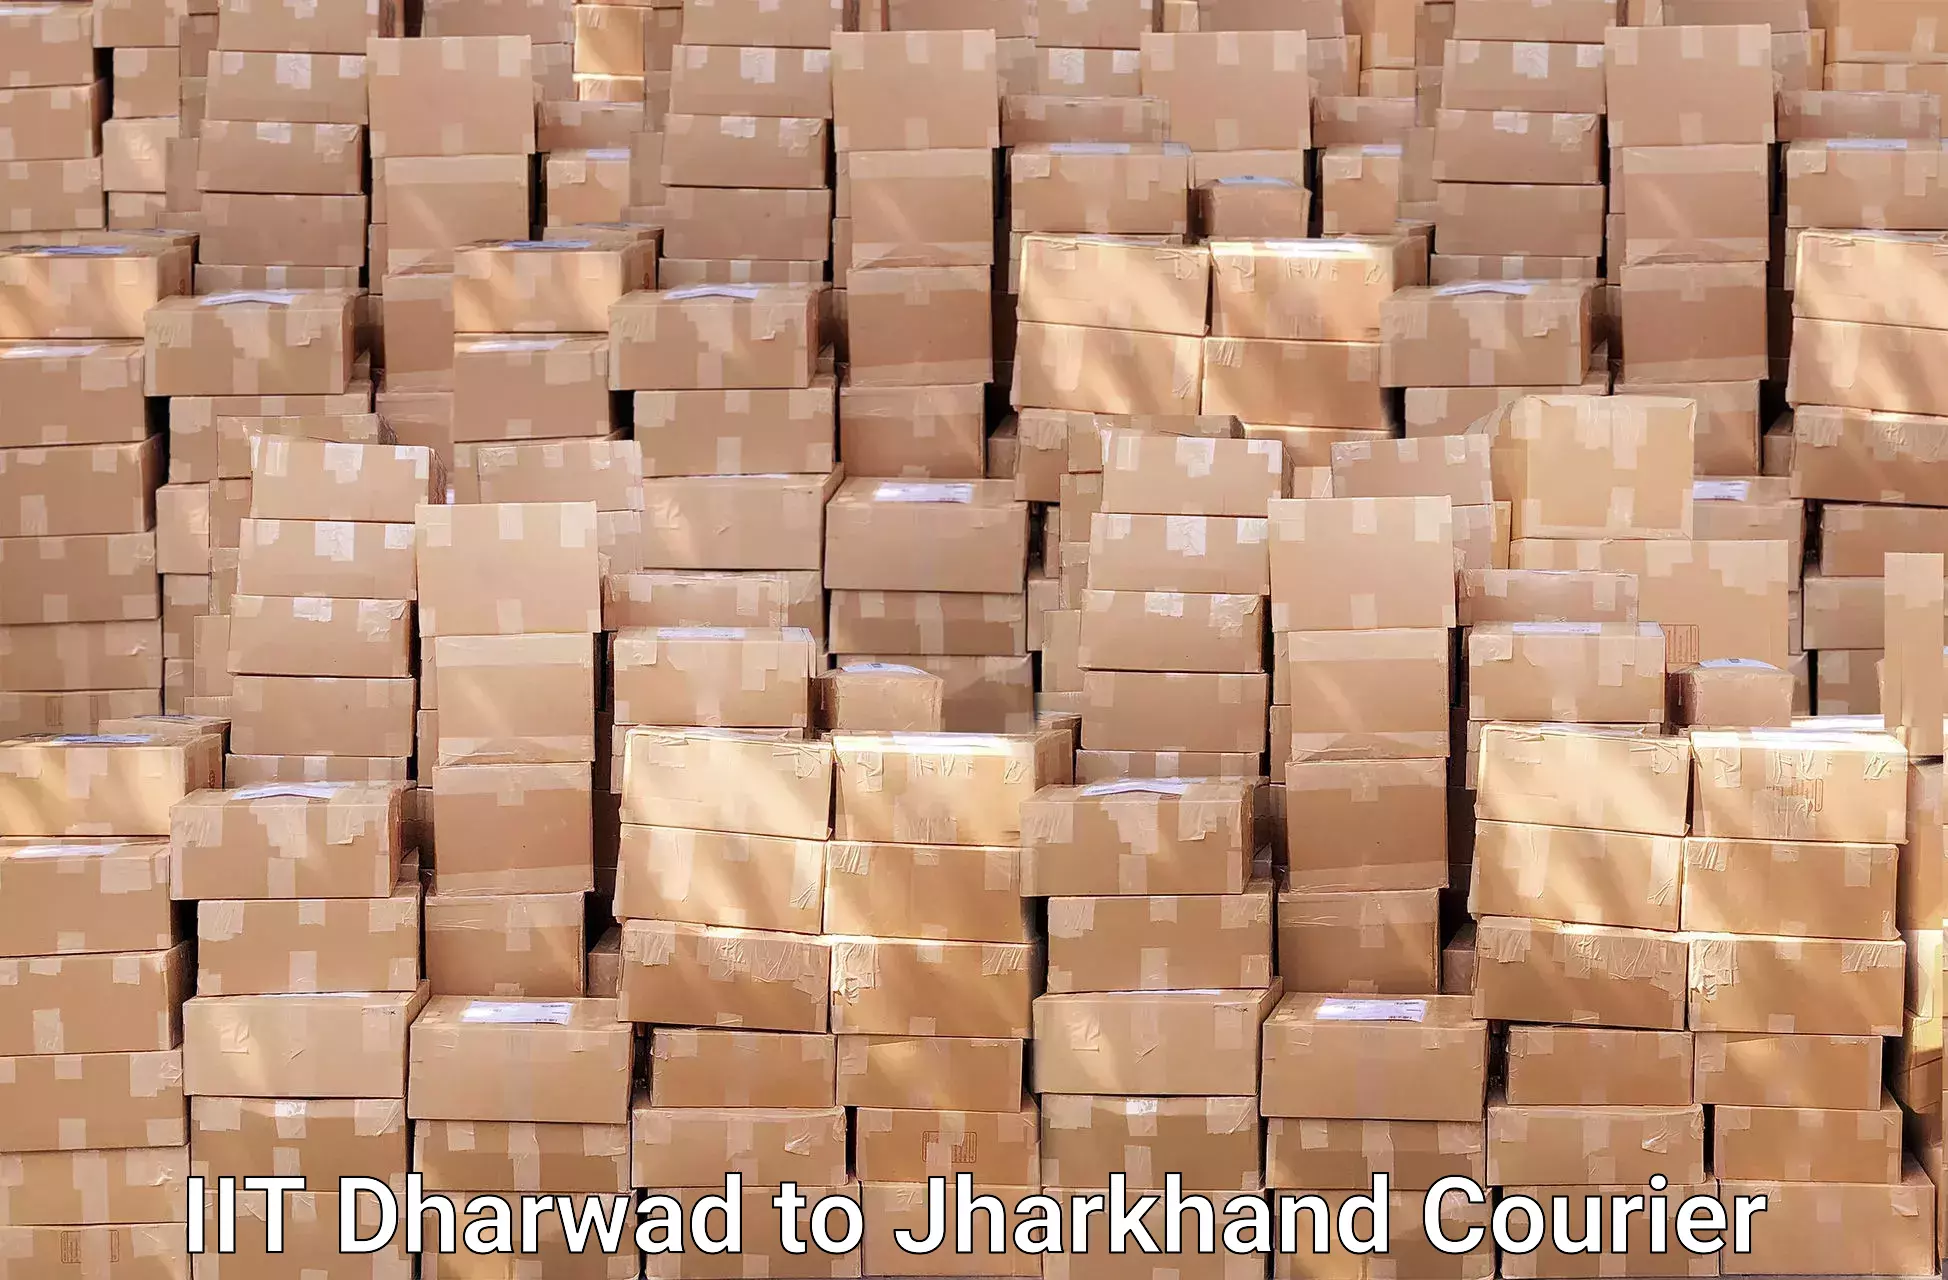 Efficient moving strategies IIT Dharwad to Koderma